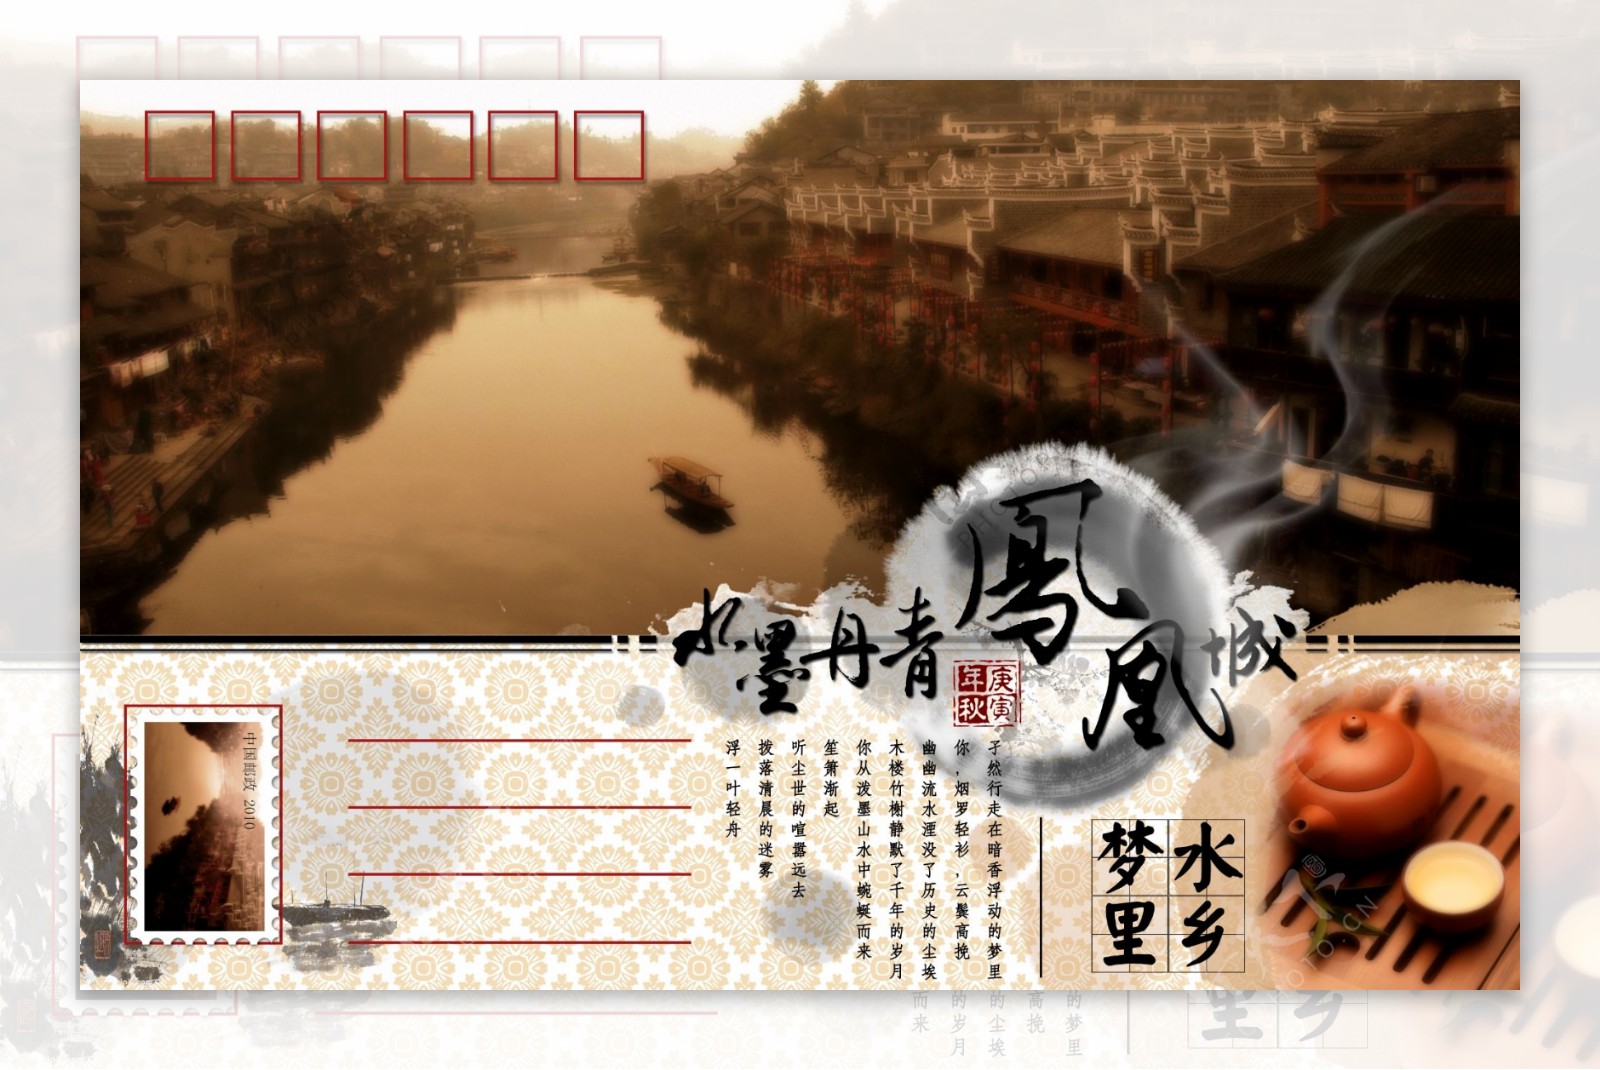 水墨丹青凤凰城中国风明信片设计